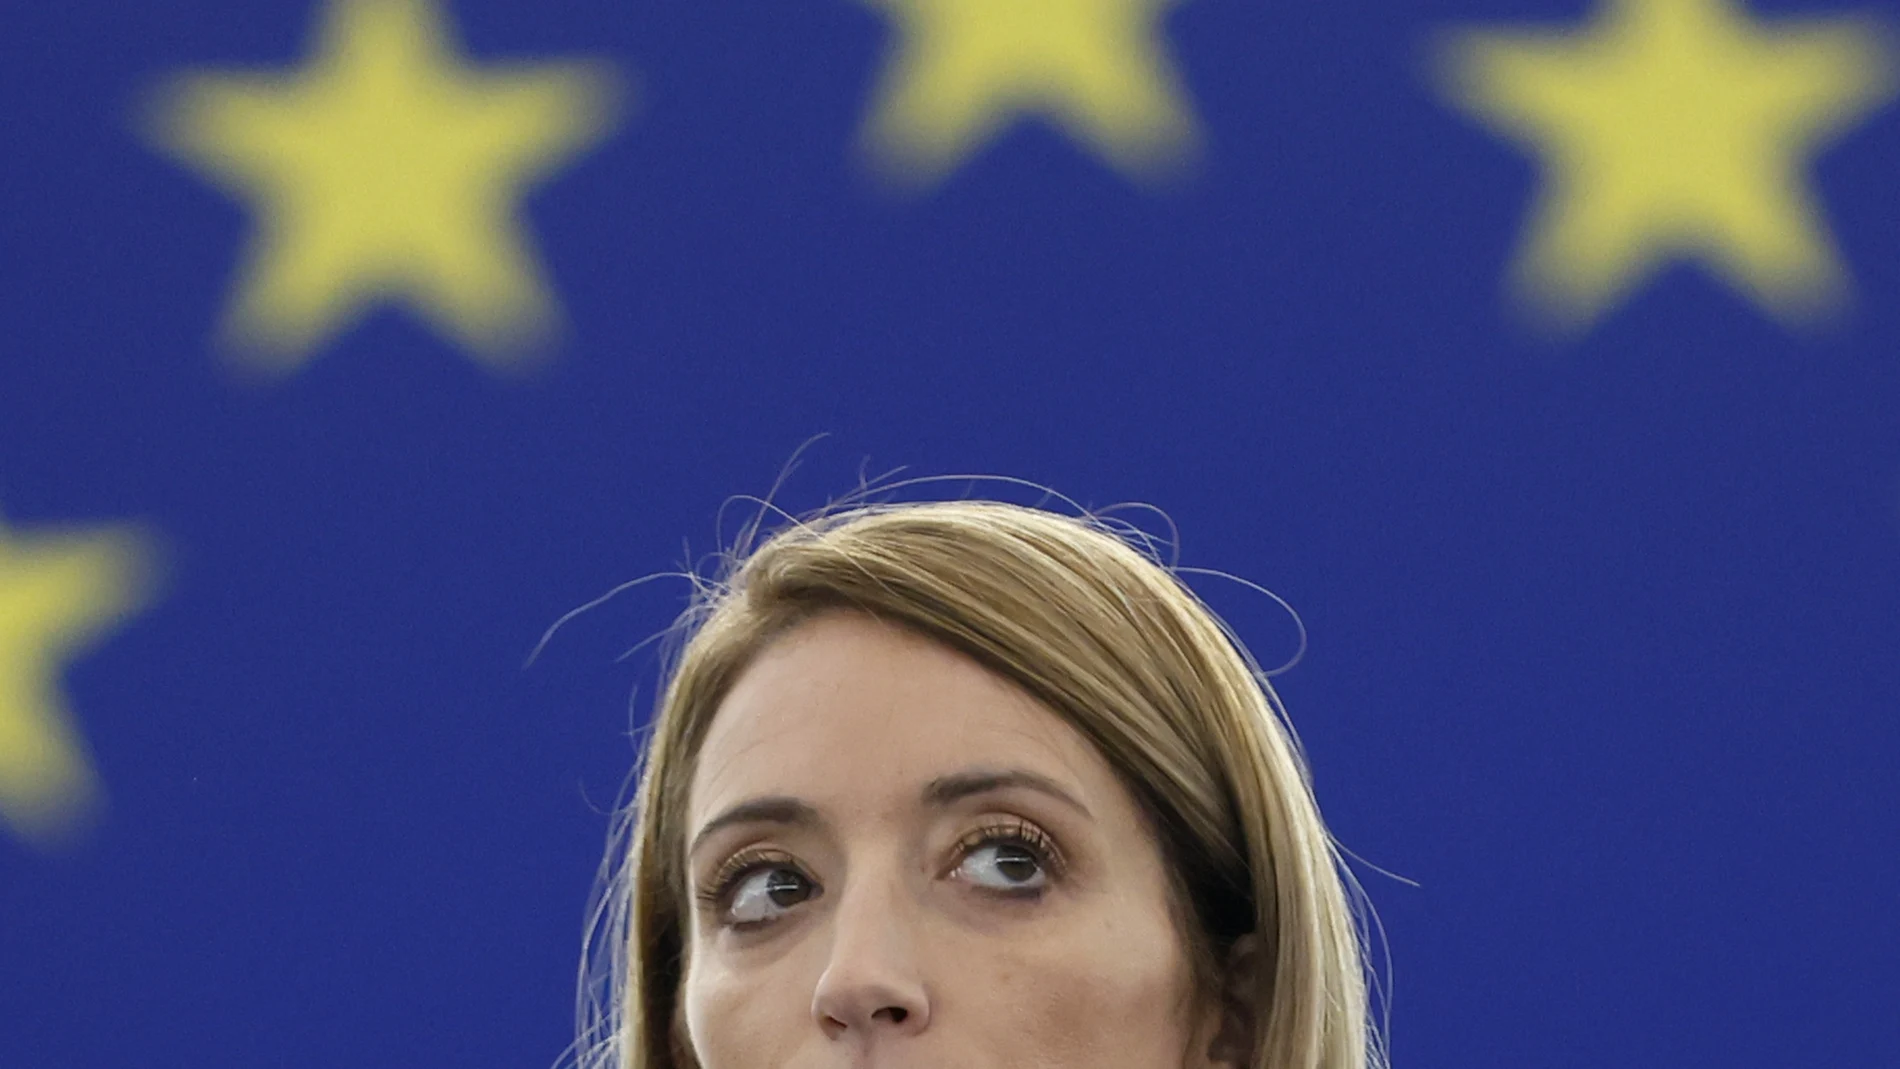 La presidenta del Parlamento Europeo, Roberta Metsola, observa durante una sesión especial sobre grupos de presión